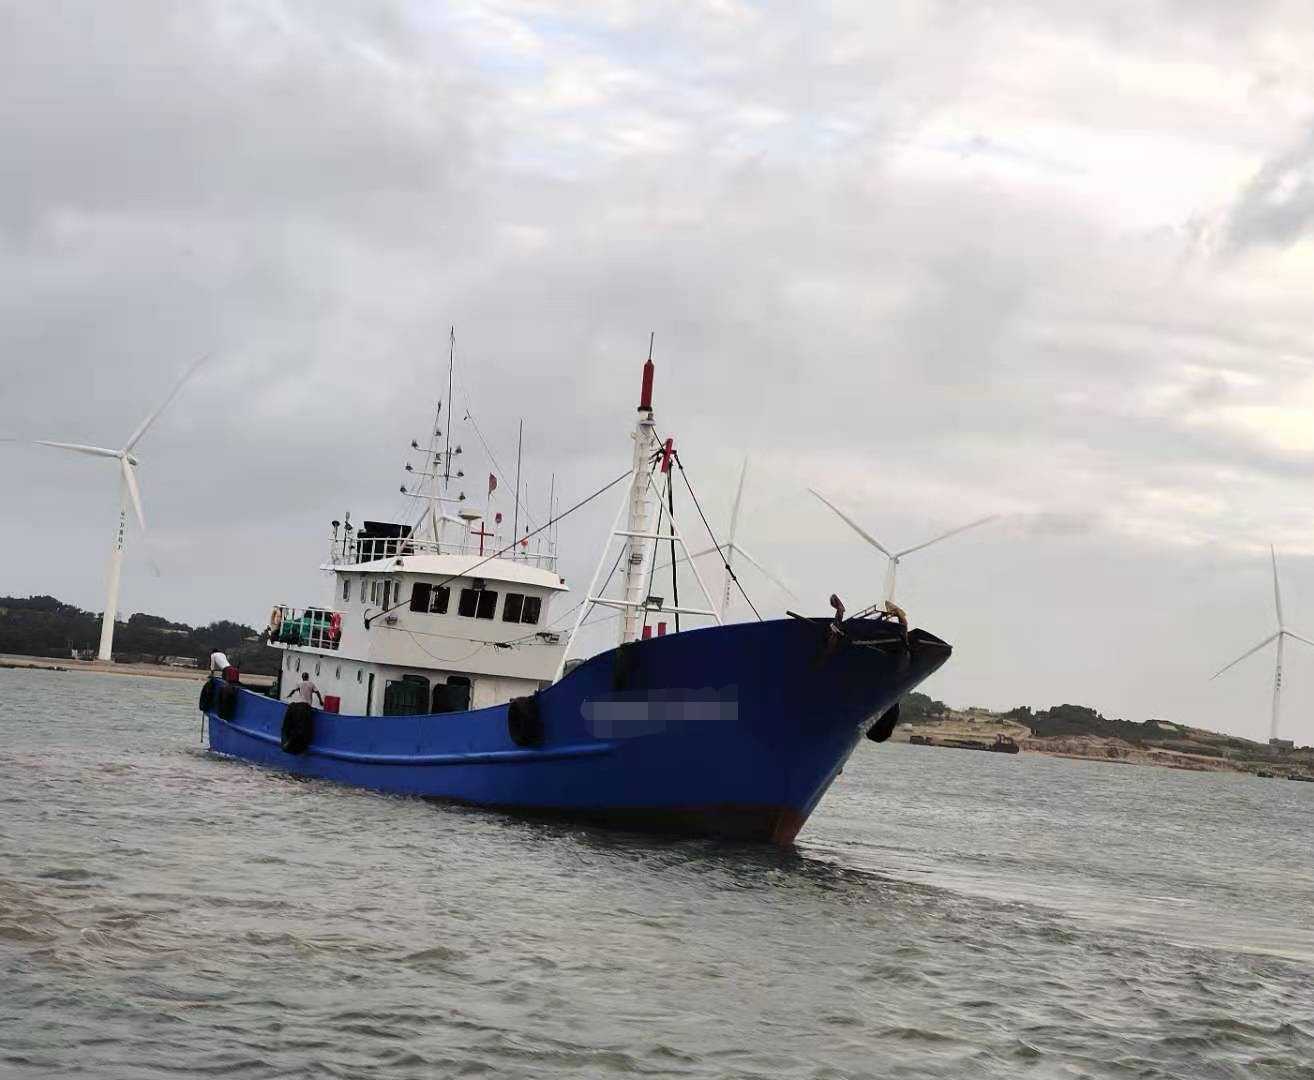 拖网渔船 — 渔船 交易 船舶交易,中国船舶交易网